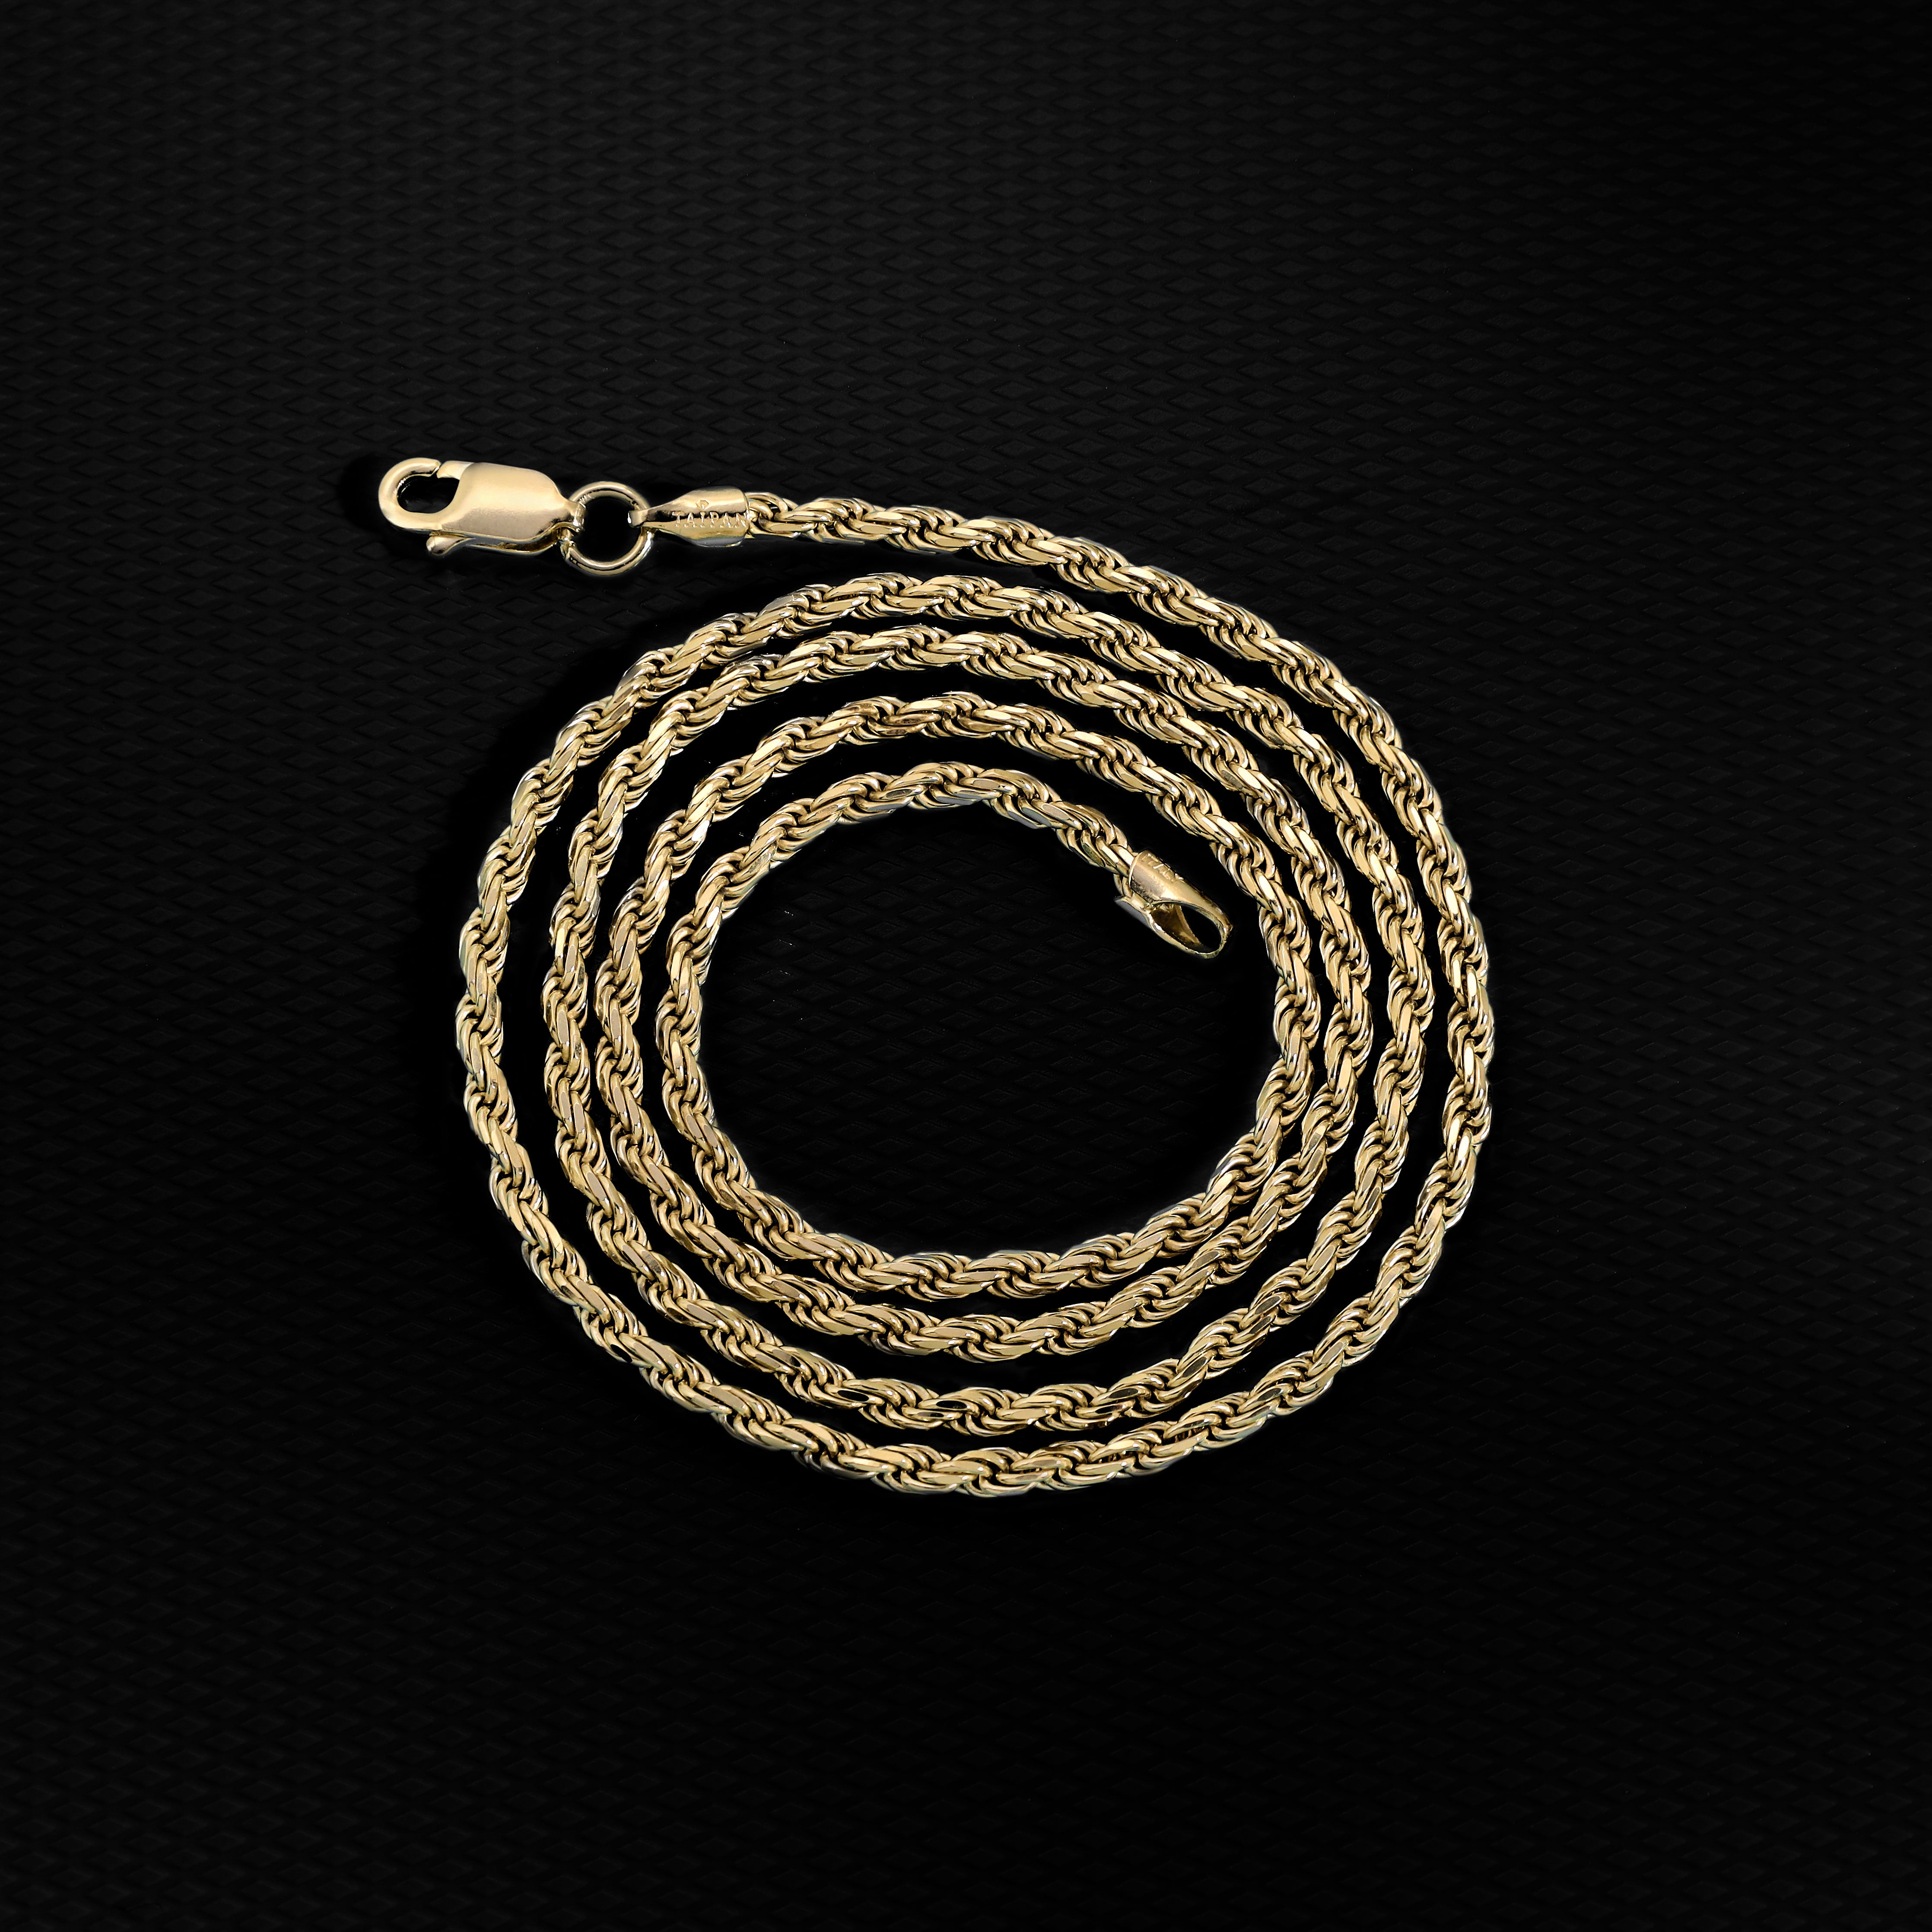 Vergoldete Kordelkette Rope Chain  2,3mm 60cm lang 925 Sterling Silber (K808) - Taipan Schmuck